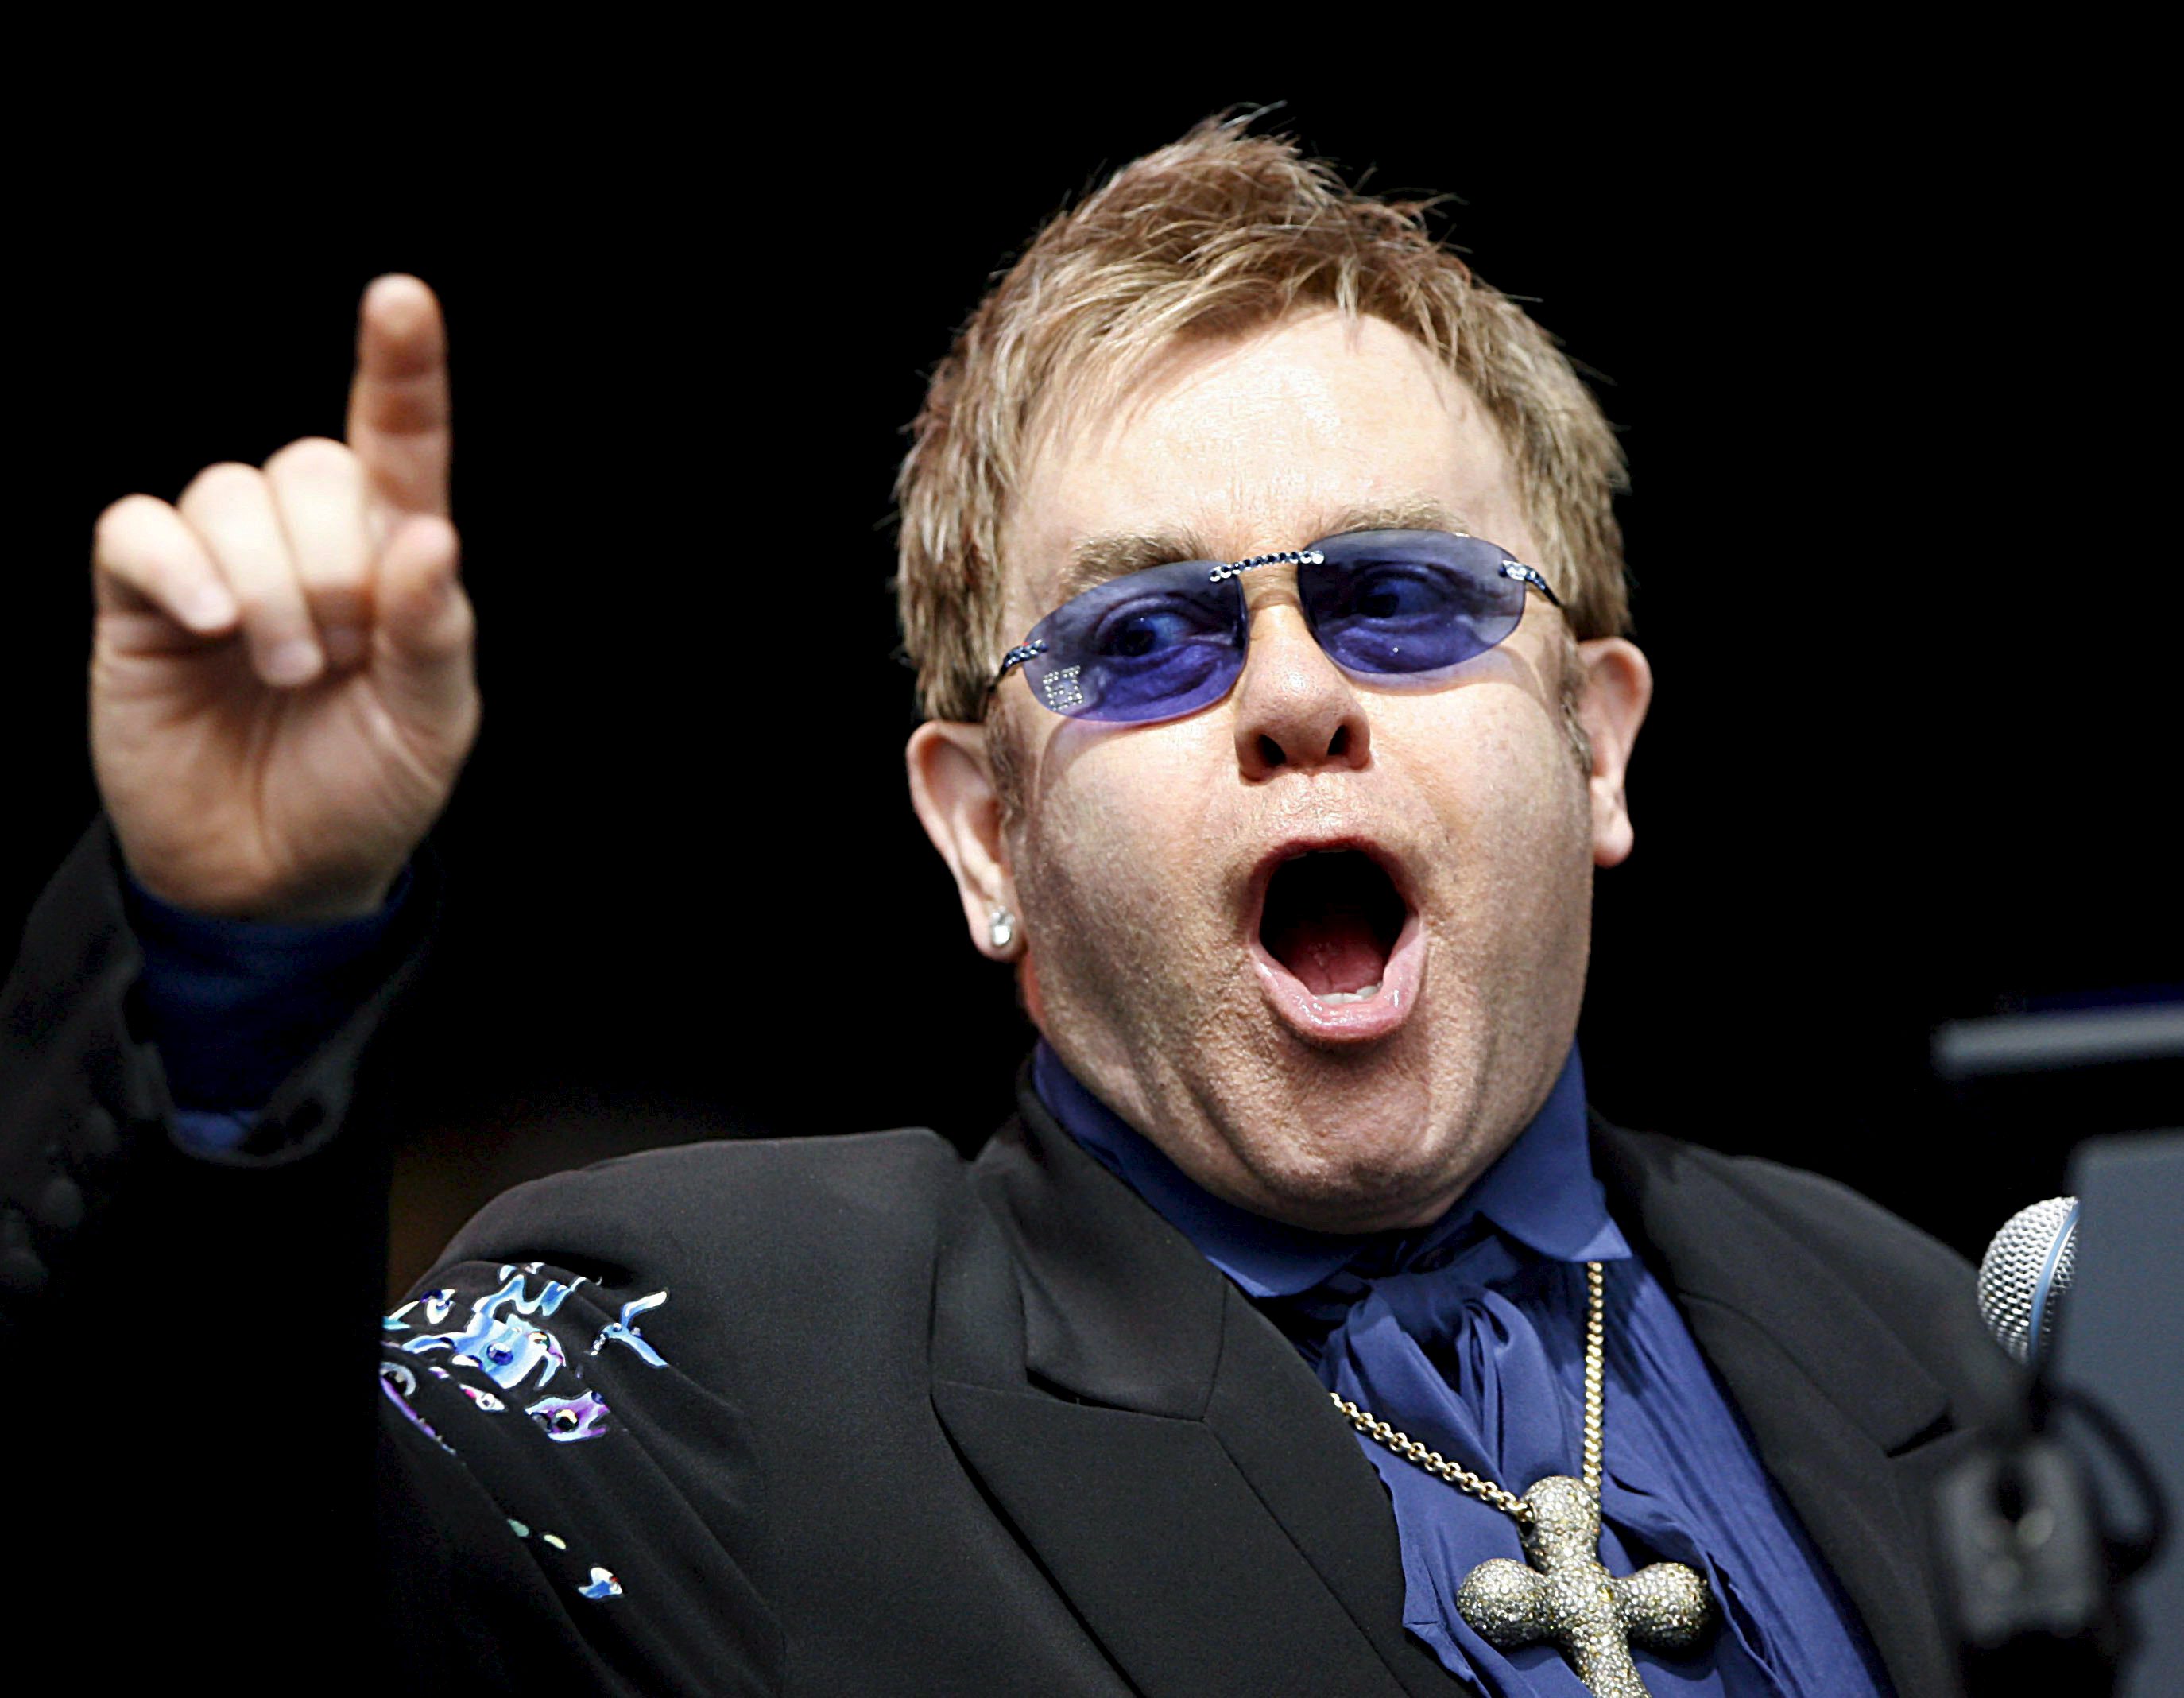 Un fan hizo molestar a Elton John en pleno show y esta fue su reacción (Video)